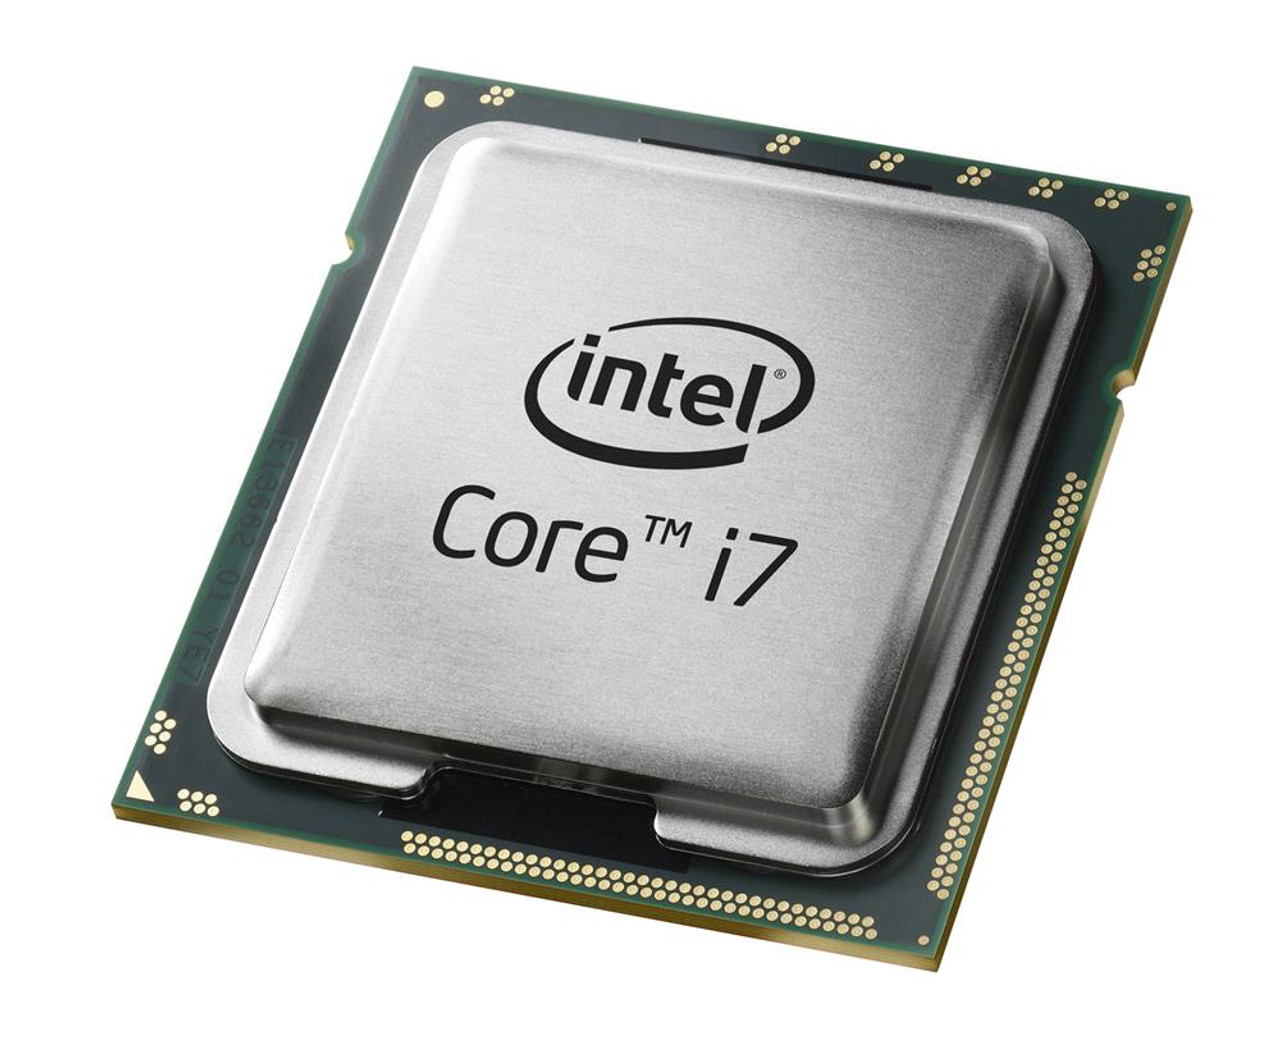 i7-5700HQ Intel Core i7 Quad Core 2.70GHz 5.00GT/s DMI2 6MB L3 Cache Mobile Processor